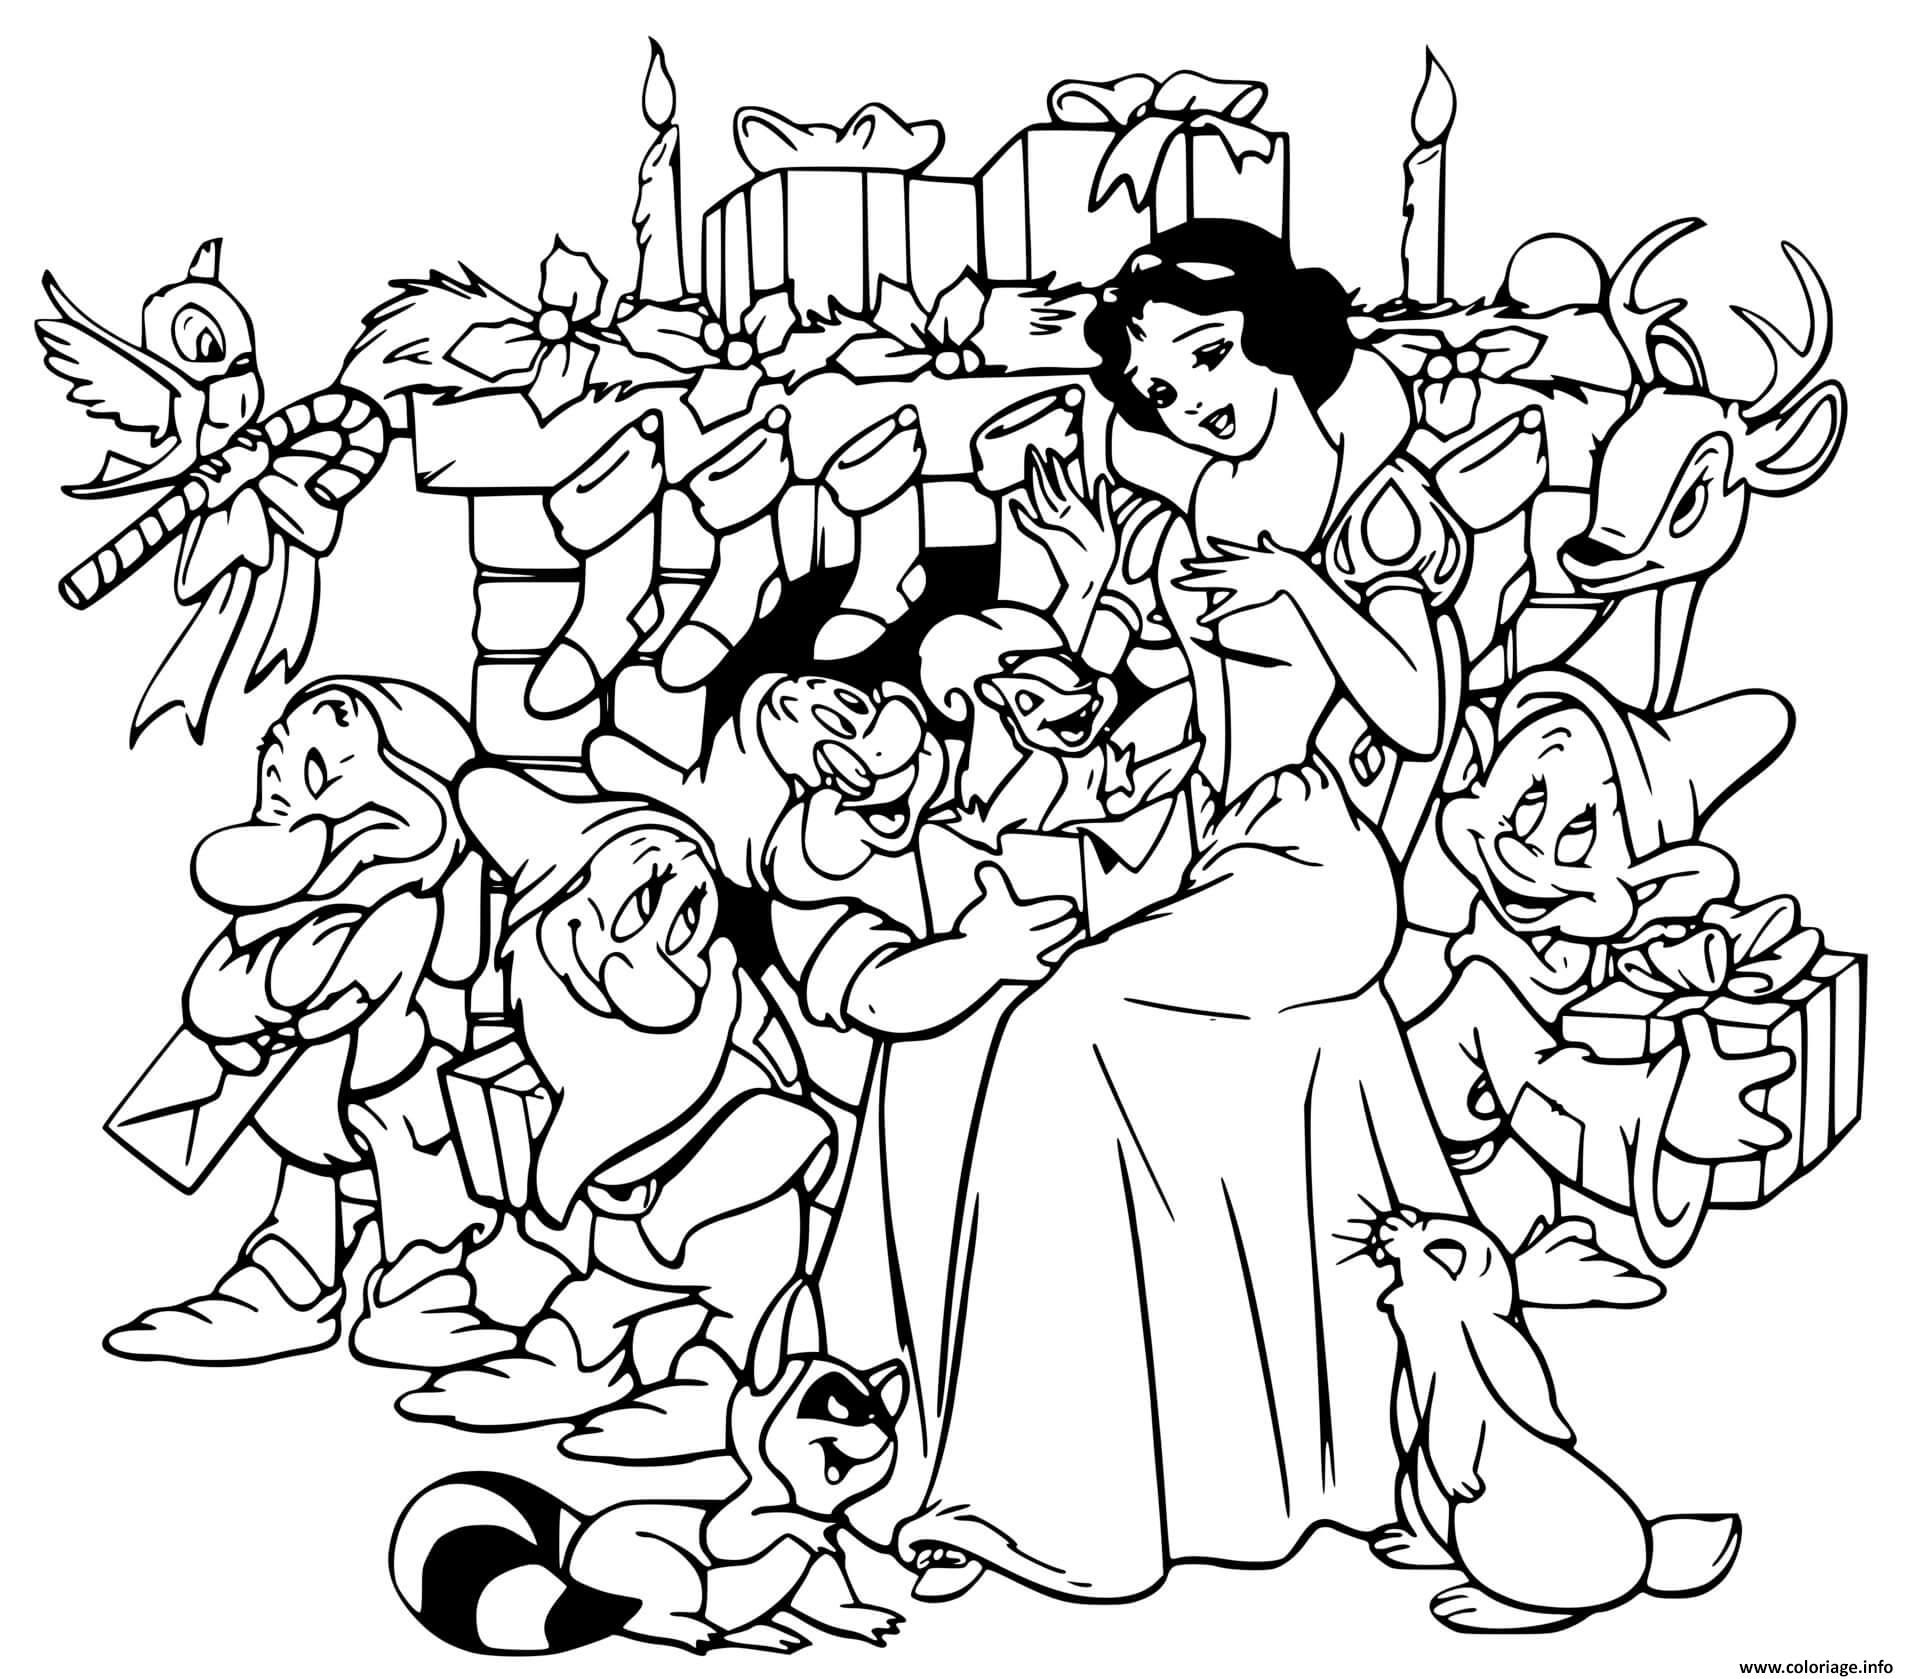 Dessin Snow White dwarfs gift exchange Coloriage Gratuit à Imprimer